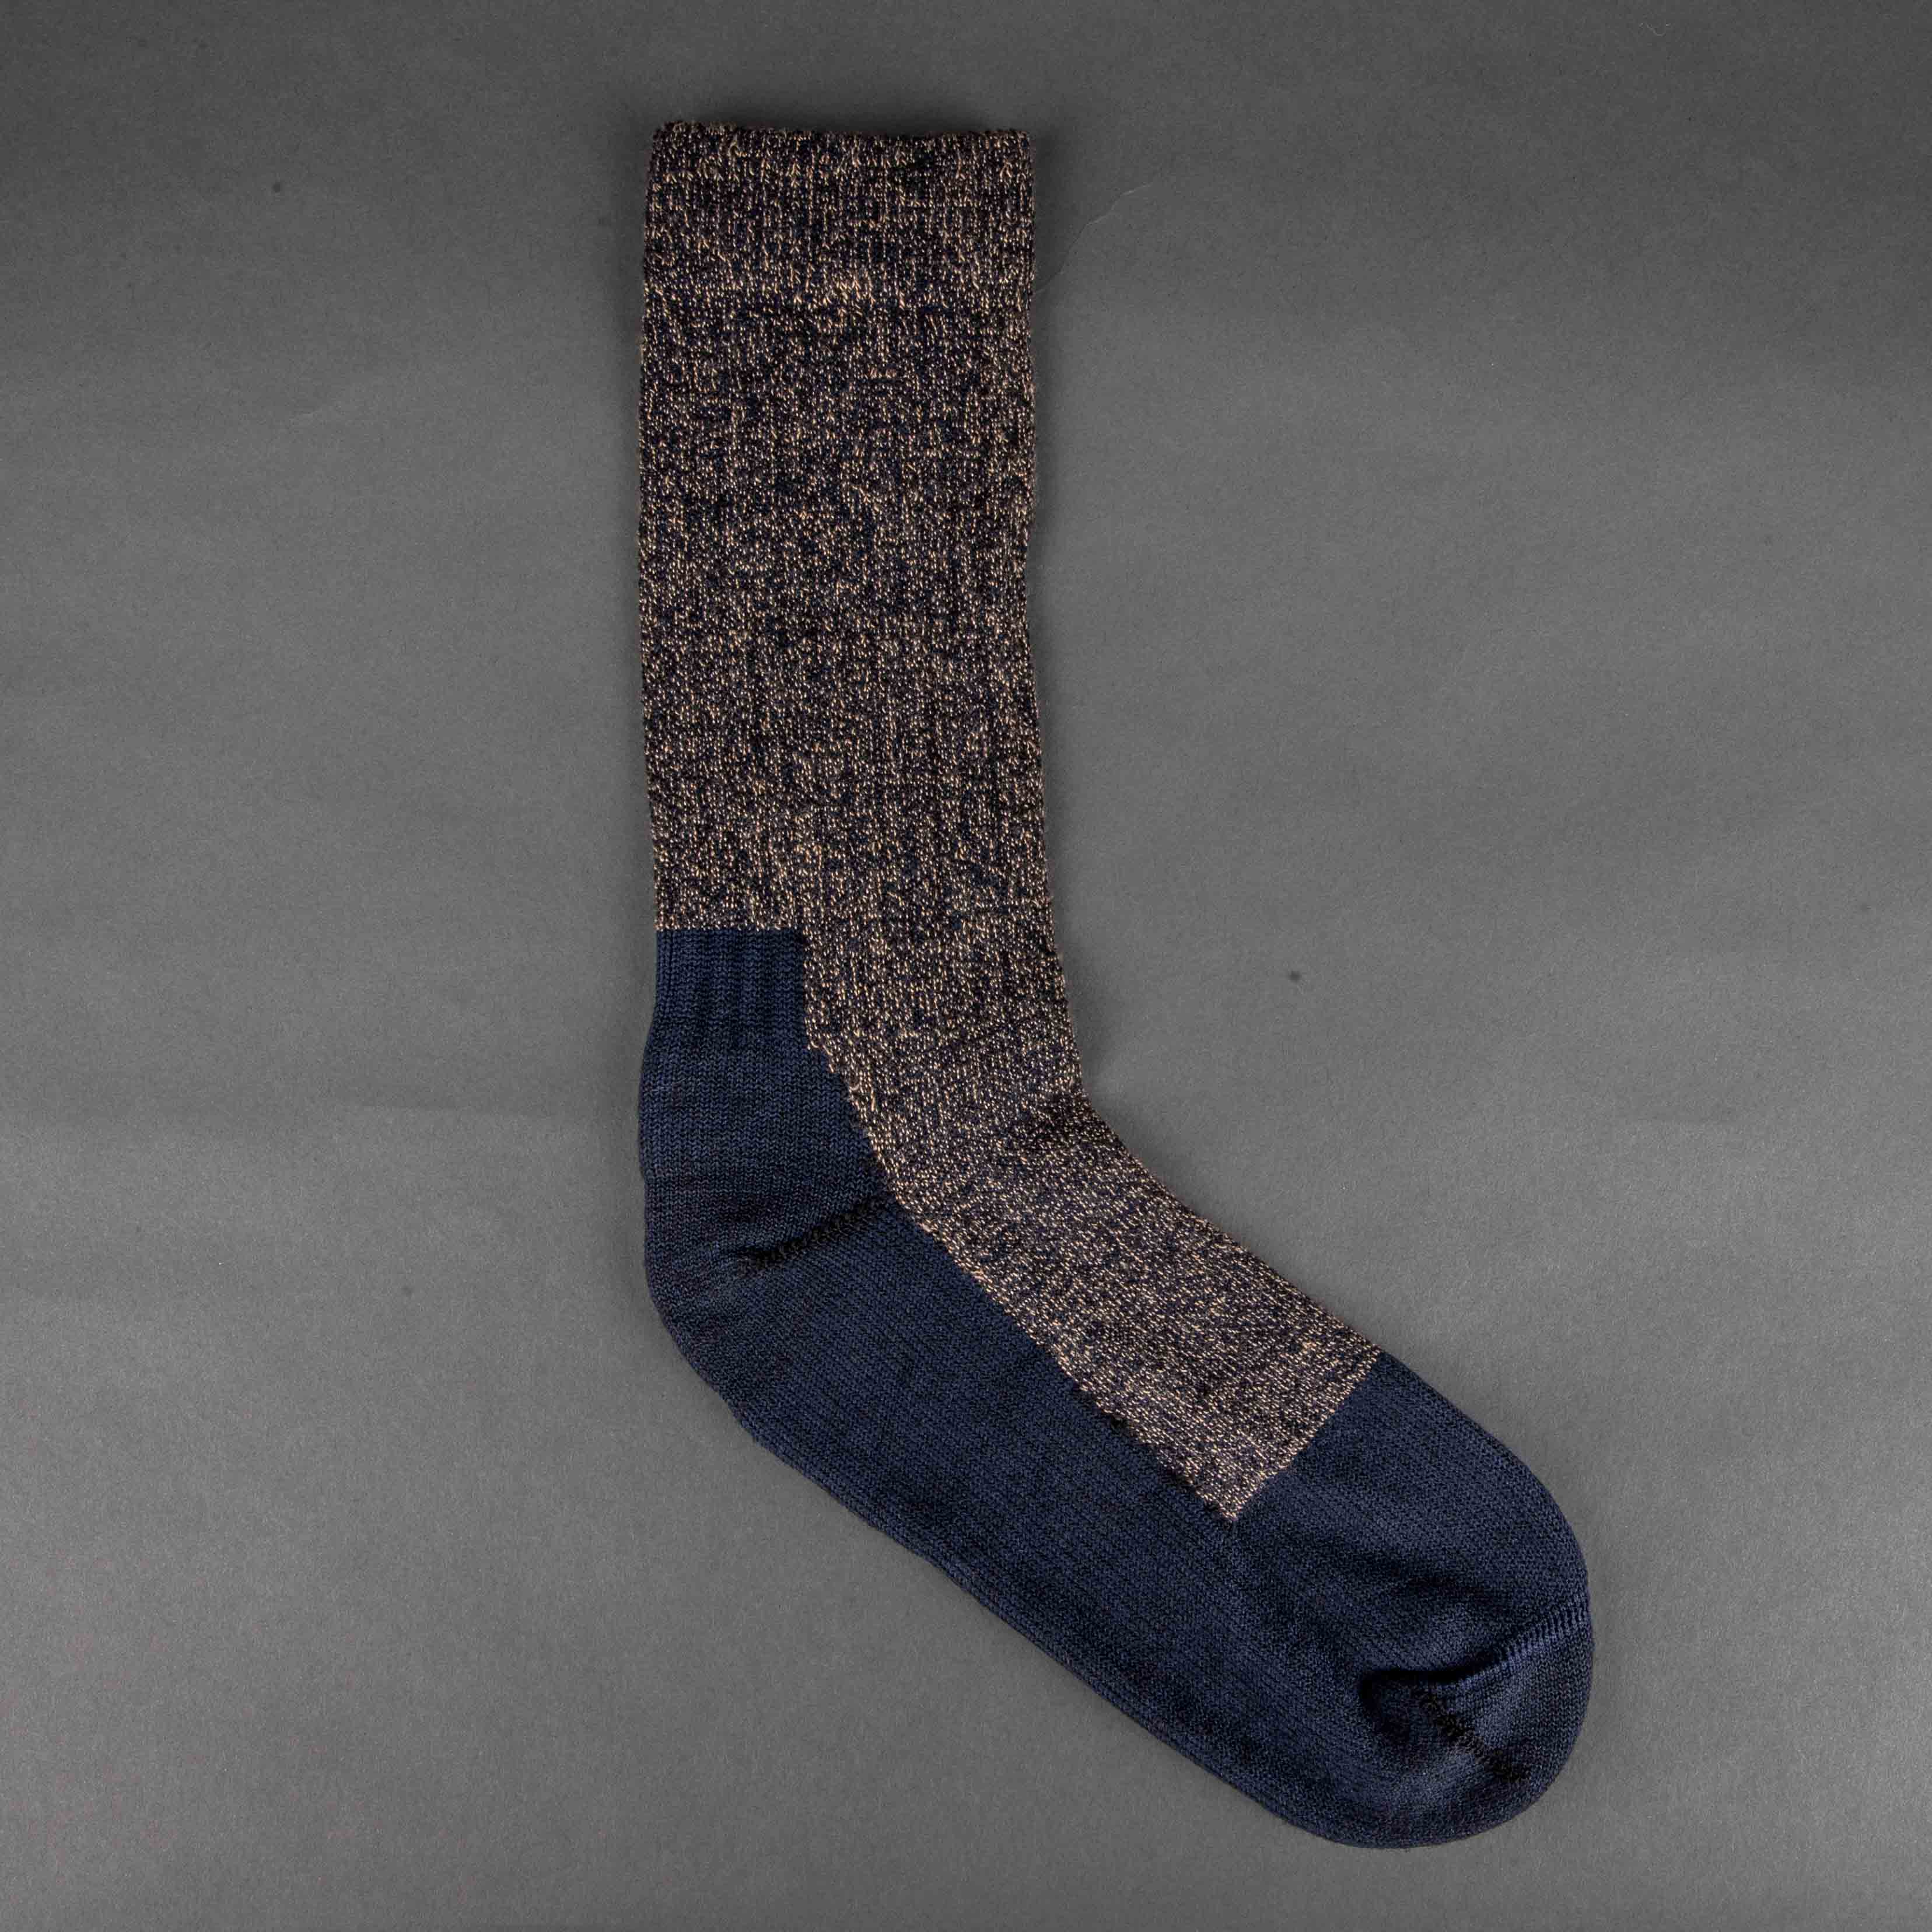 Deep Toe Capped Wool Socken dark navy